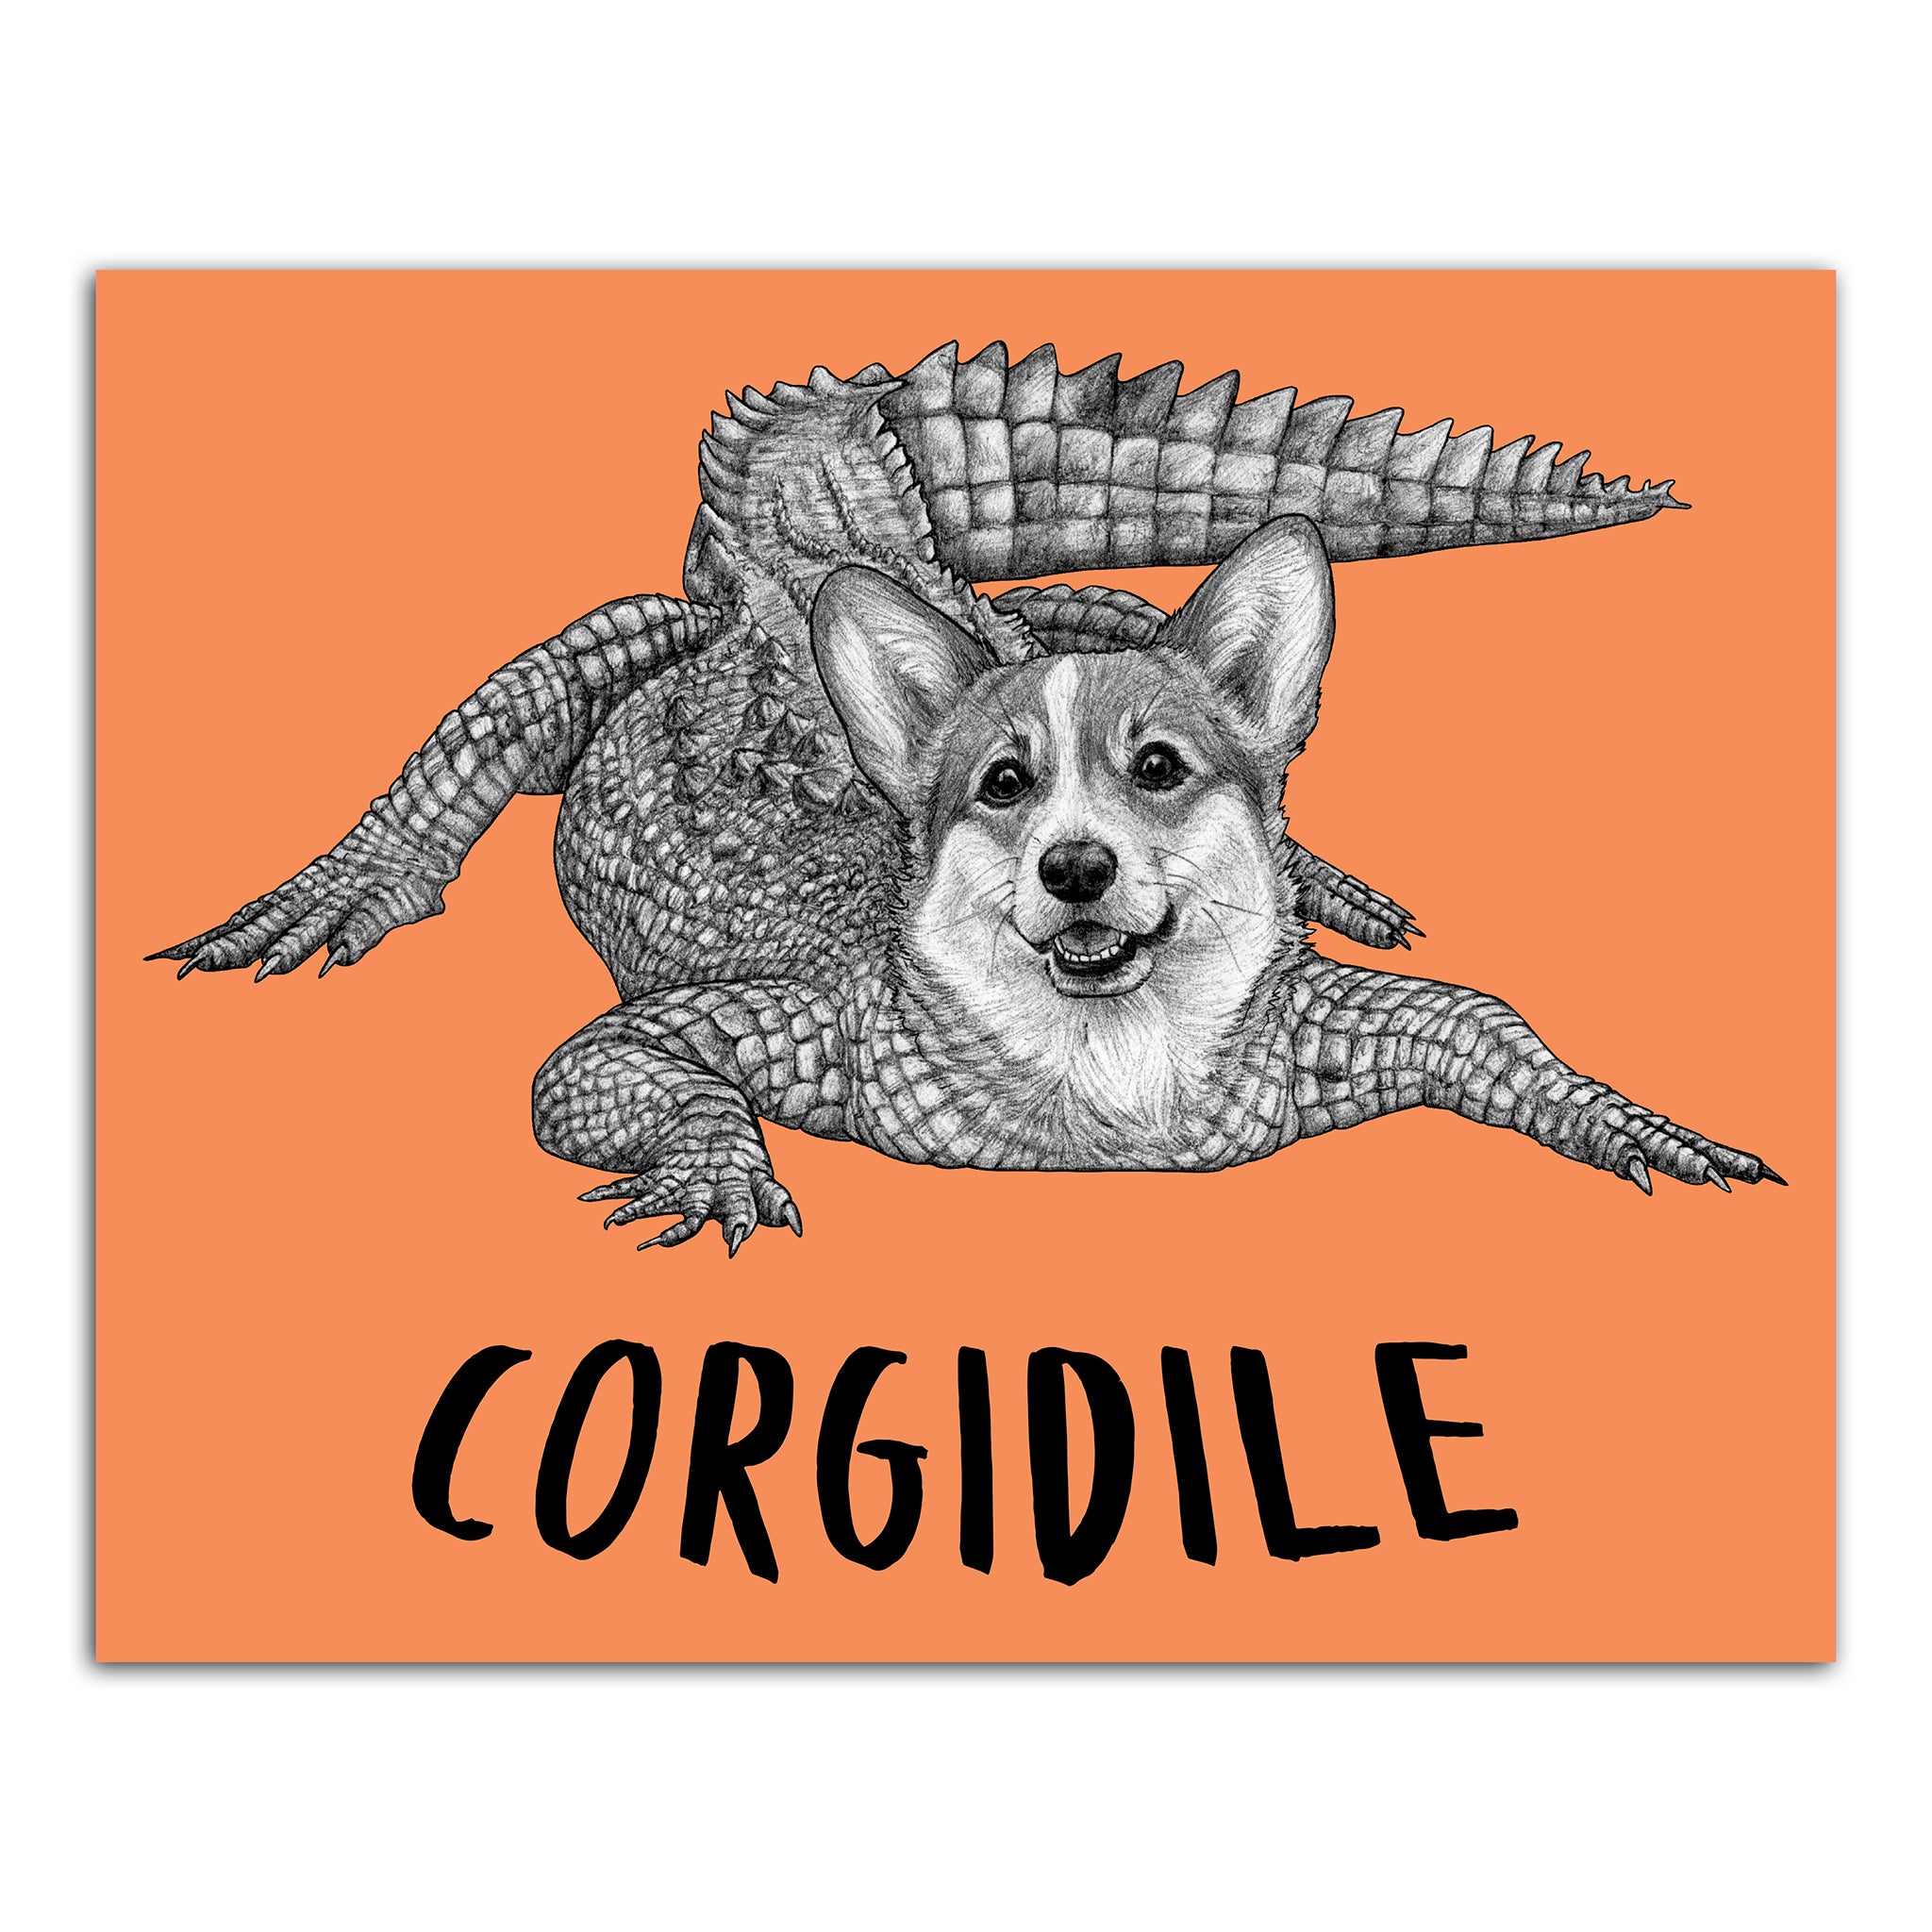 Corgidile 8x10" Color Print